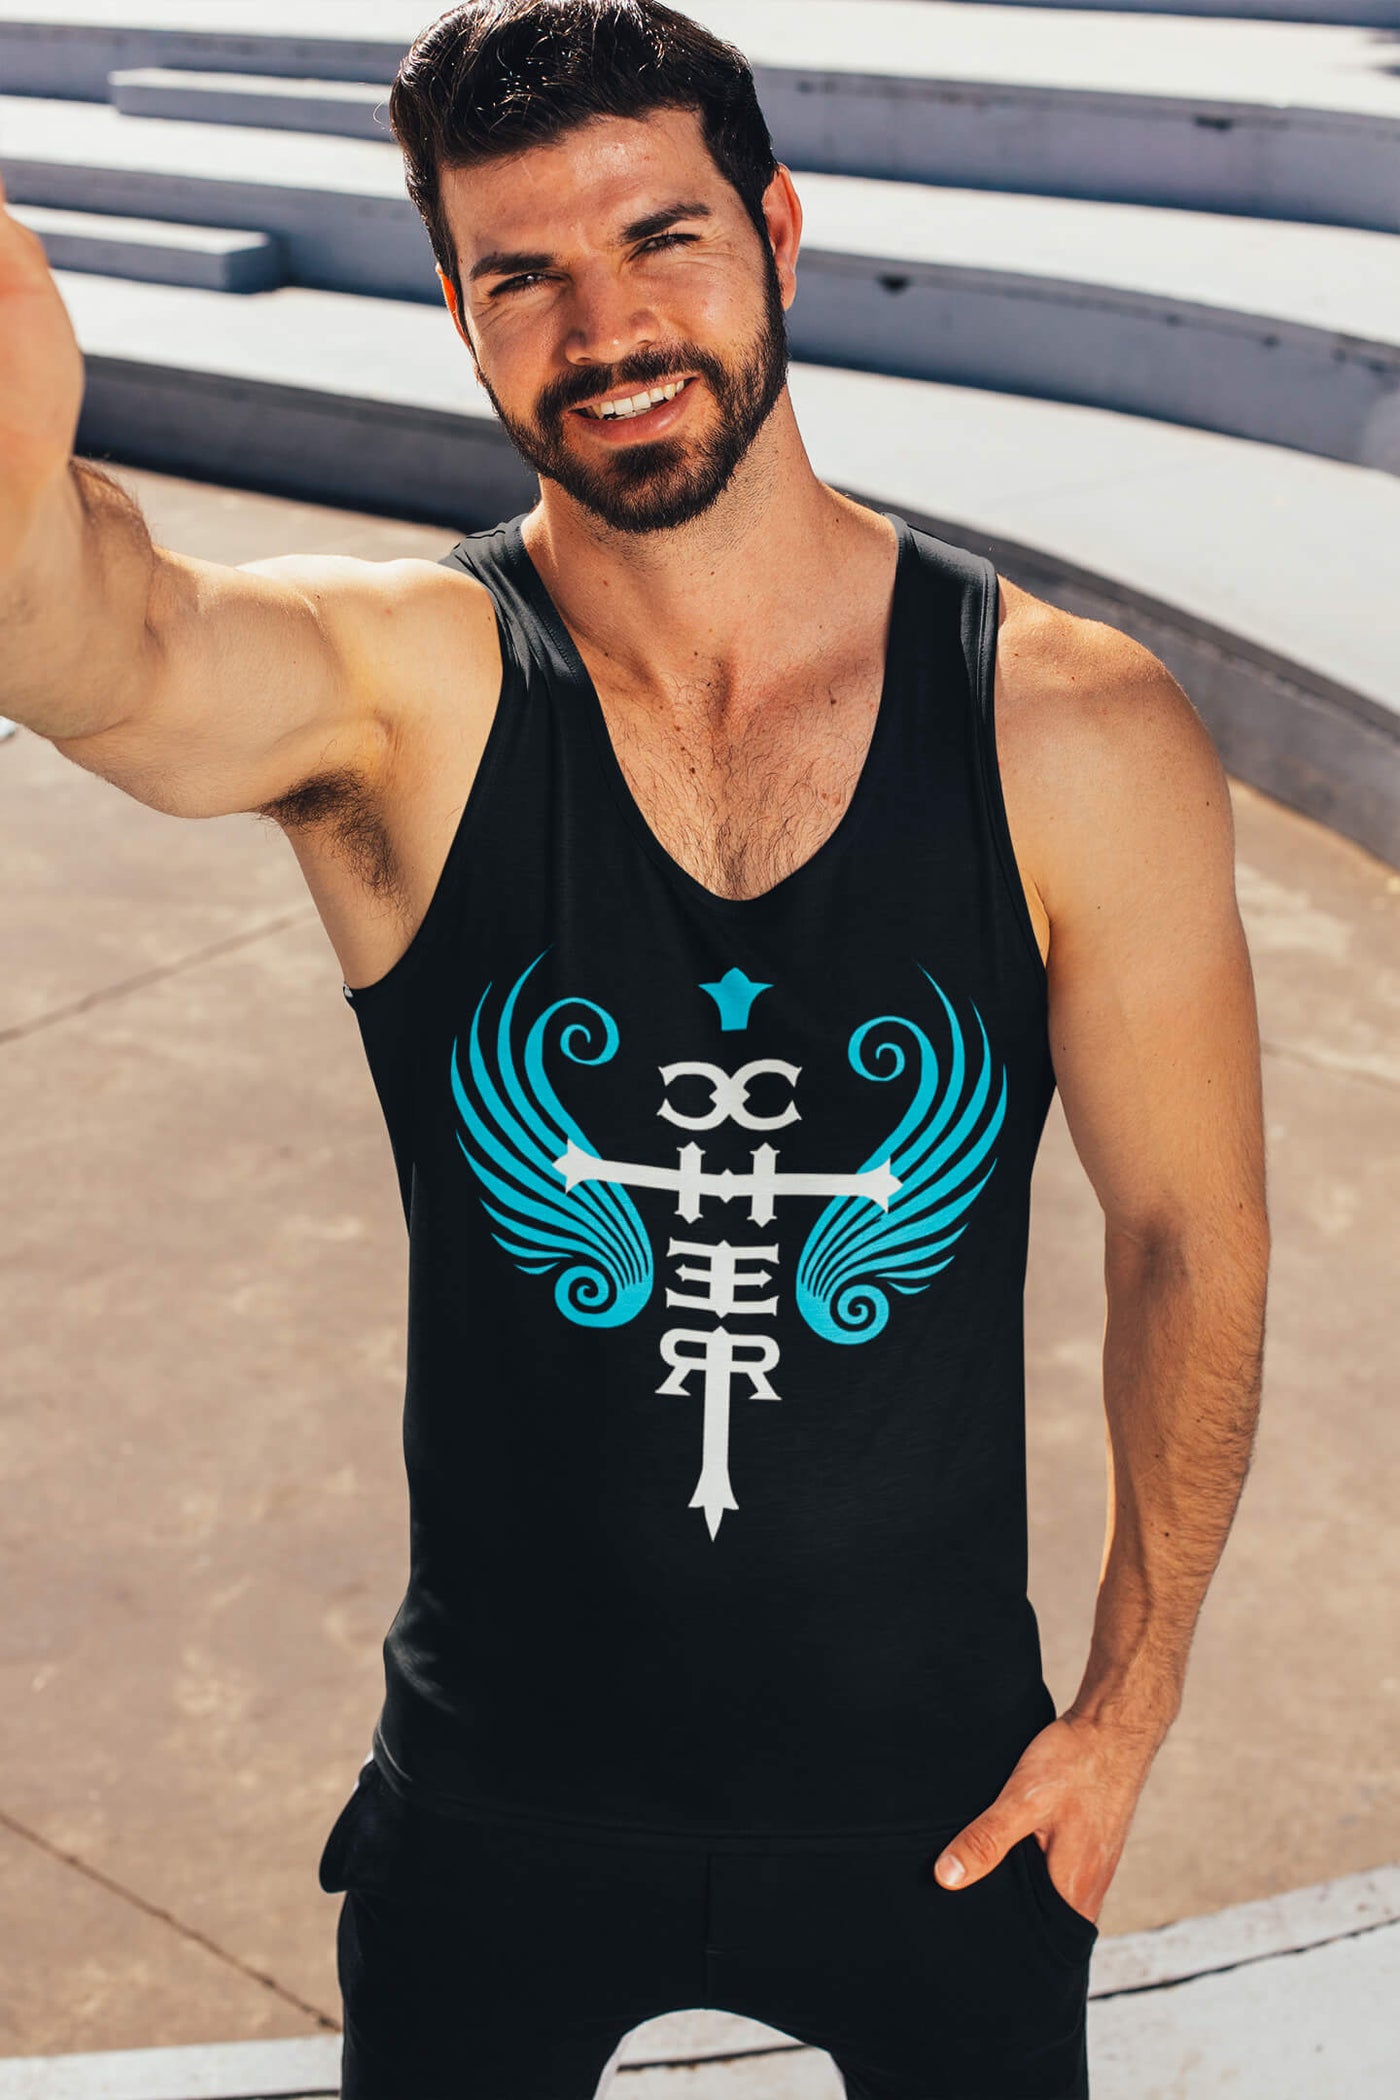 Muscular, bearded gay man wearing the Cher Fan Club Tank Top by Gllamazon.